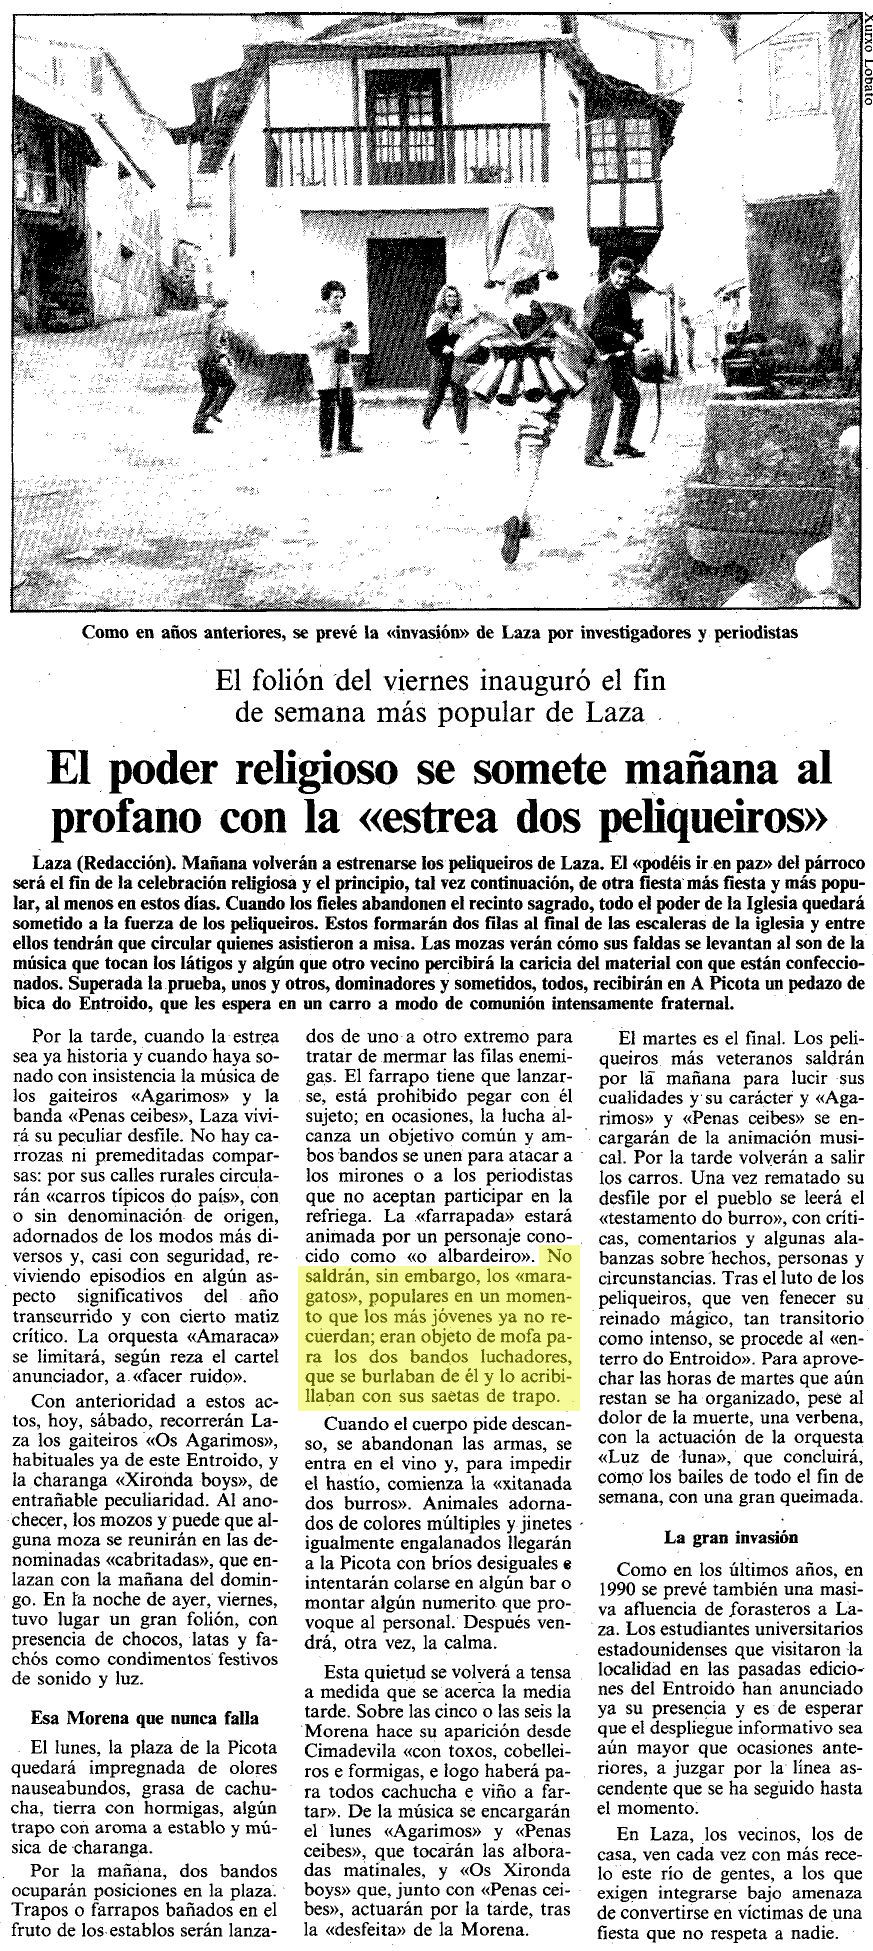 La Voz de Galicia, 24/02/1990